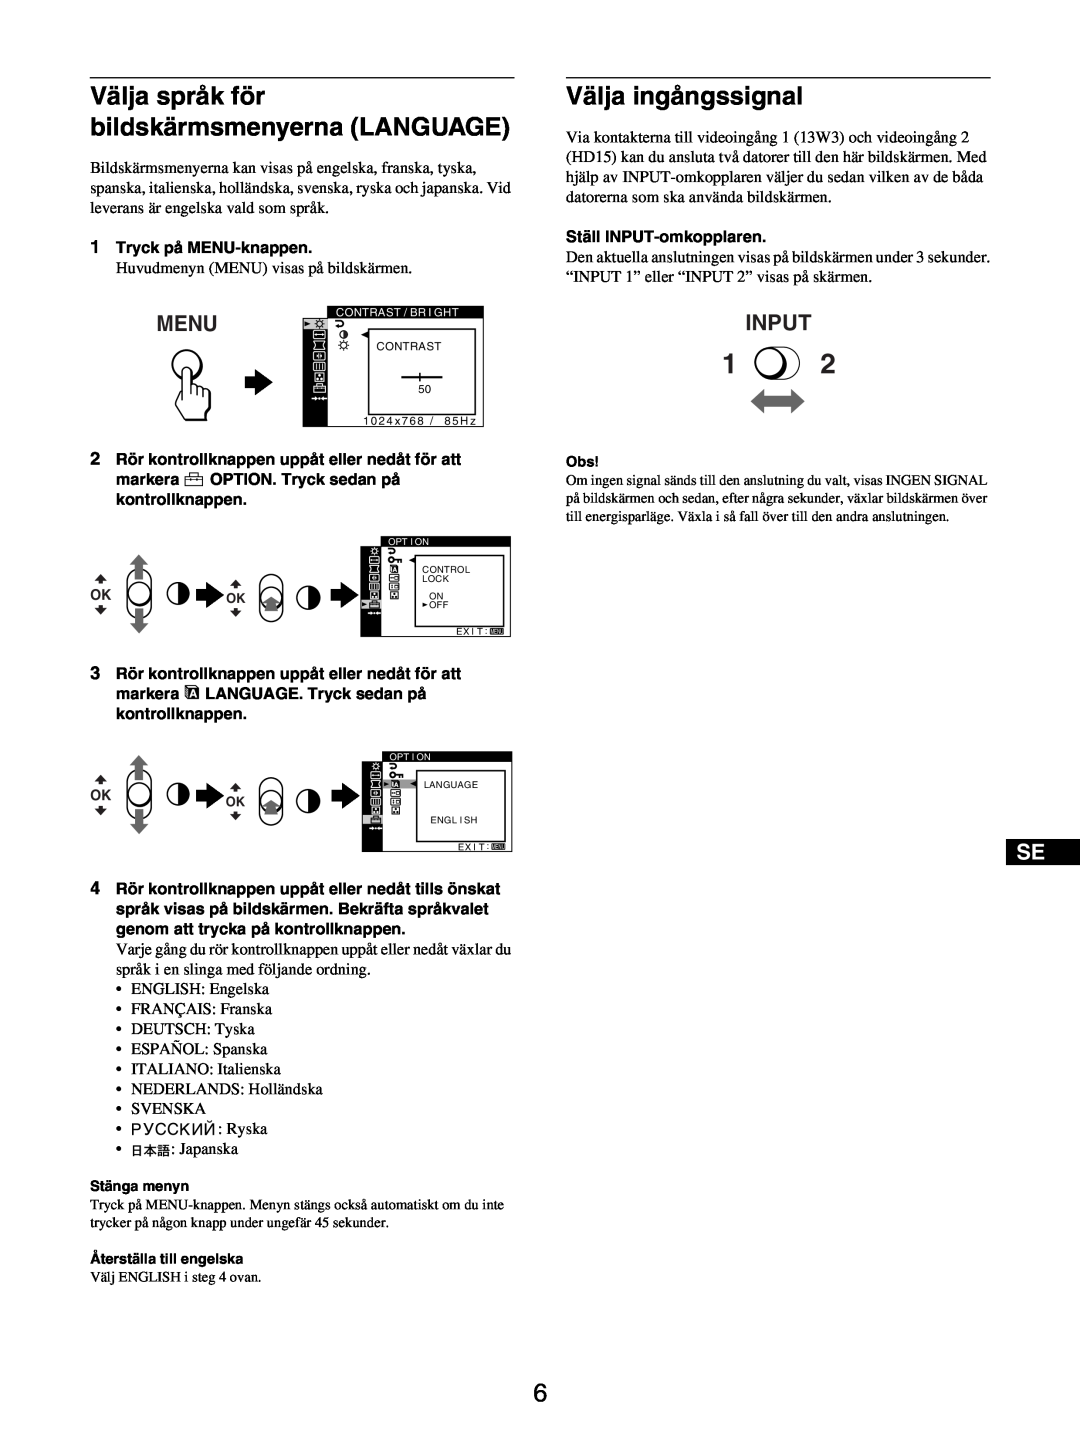 Sony GDM-5510 Välja språk för bildskärmsmenyerna LANGUAGE, Välja ingångssignal, Menu, Input, Tryck på MENU-knappen 